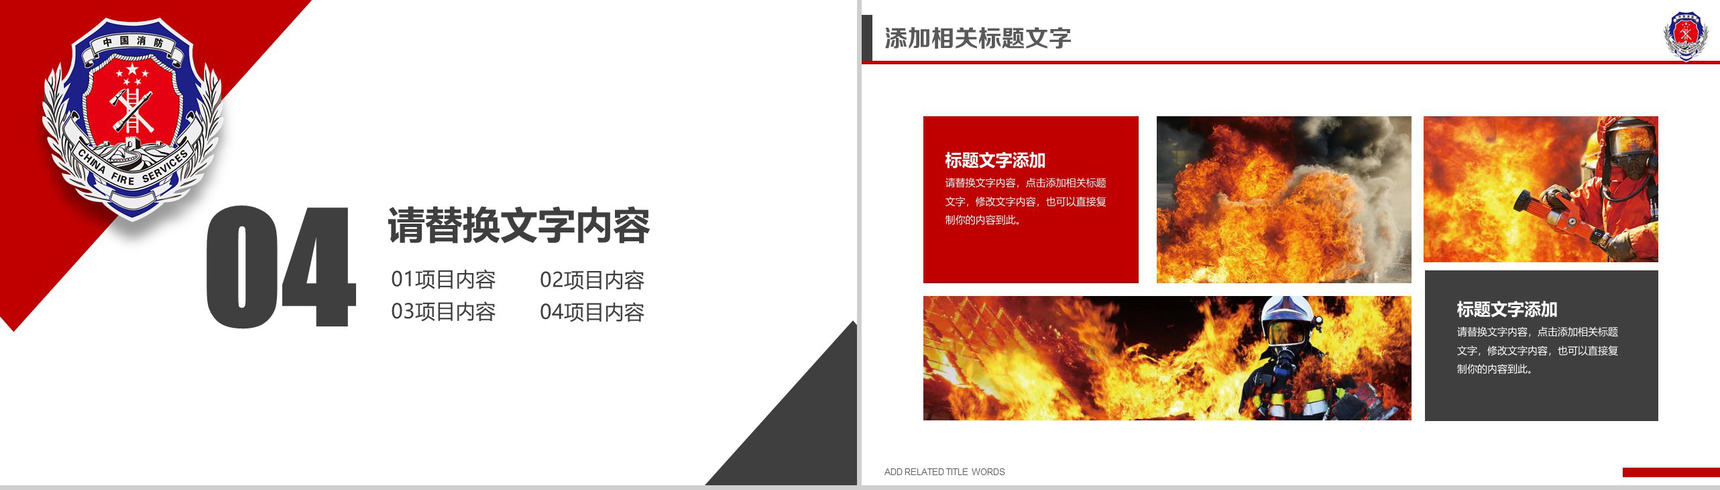 中国消防 防火安全PPT模板-11